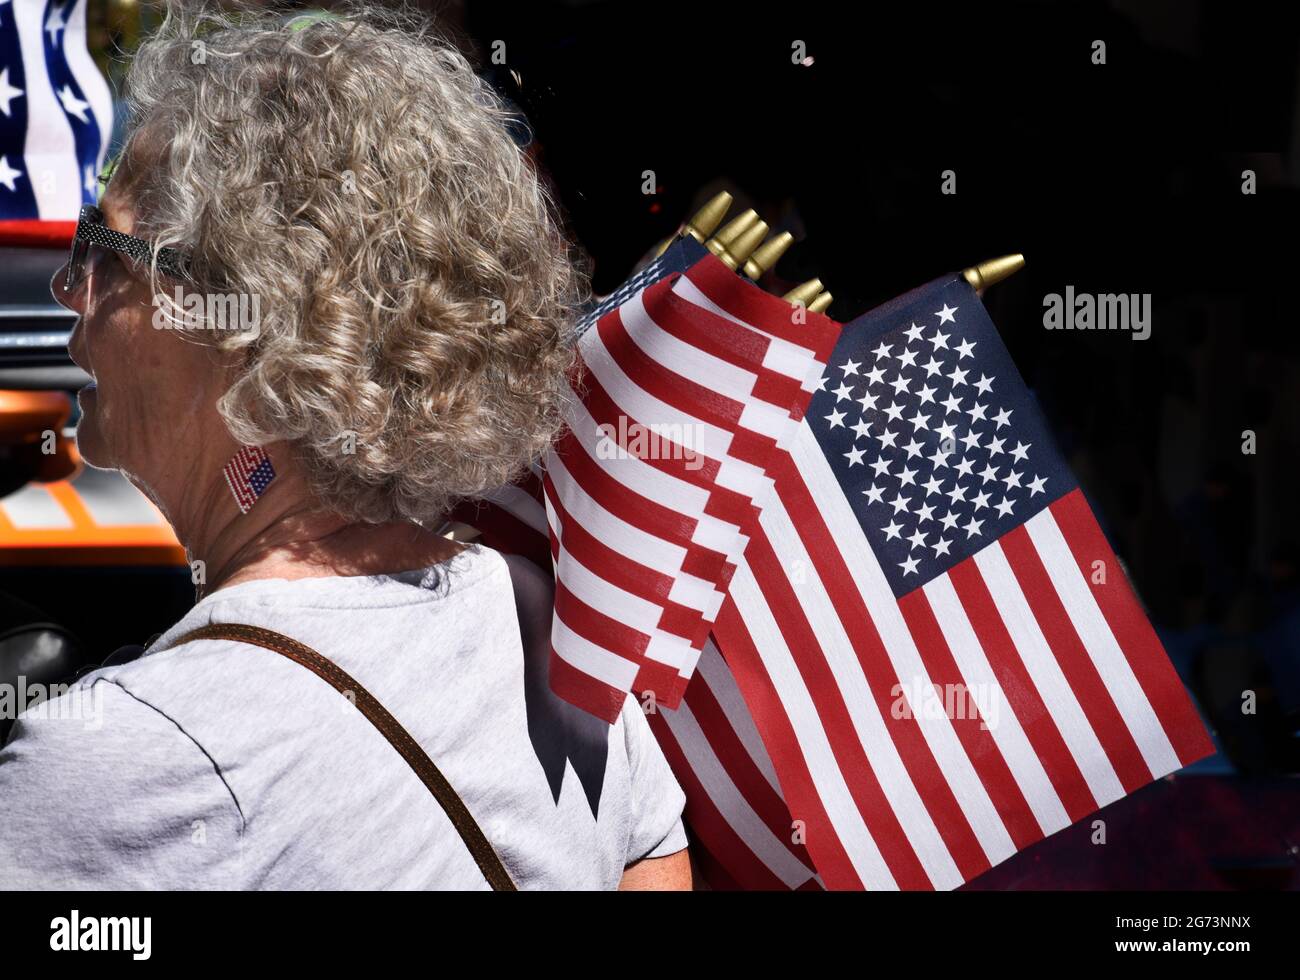 Eine Frau verteilt kleine amerikanische Flaggen auf einer Oldtimermesse am 4. Juli in Santa Fe, New Mexico. Stockfoto